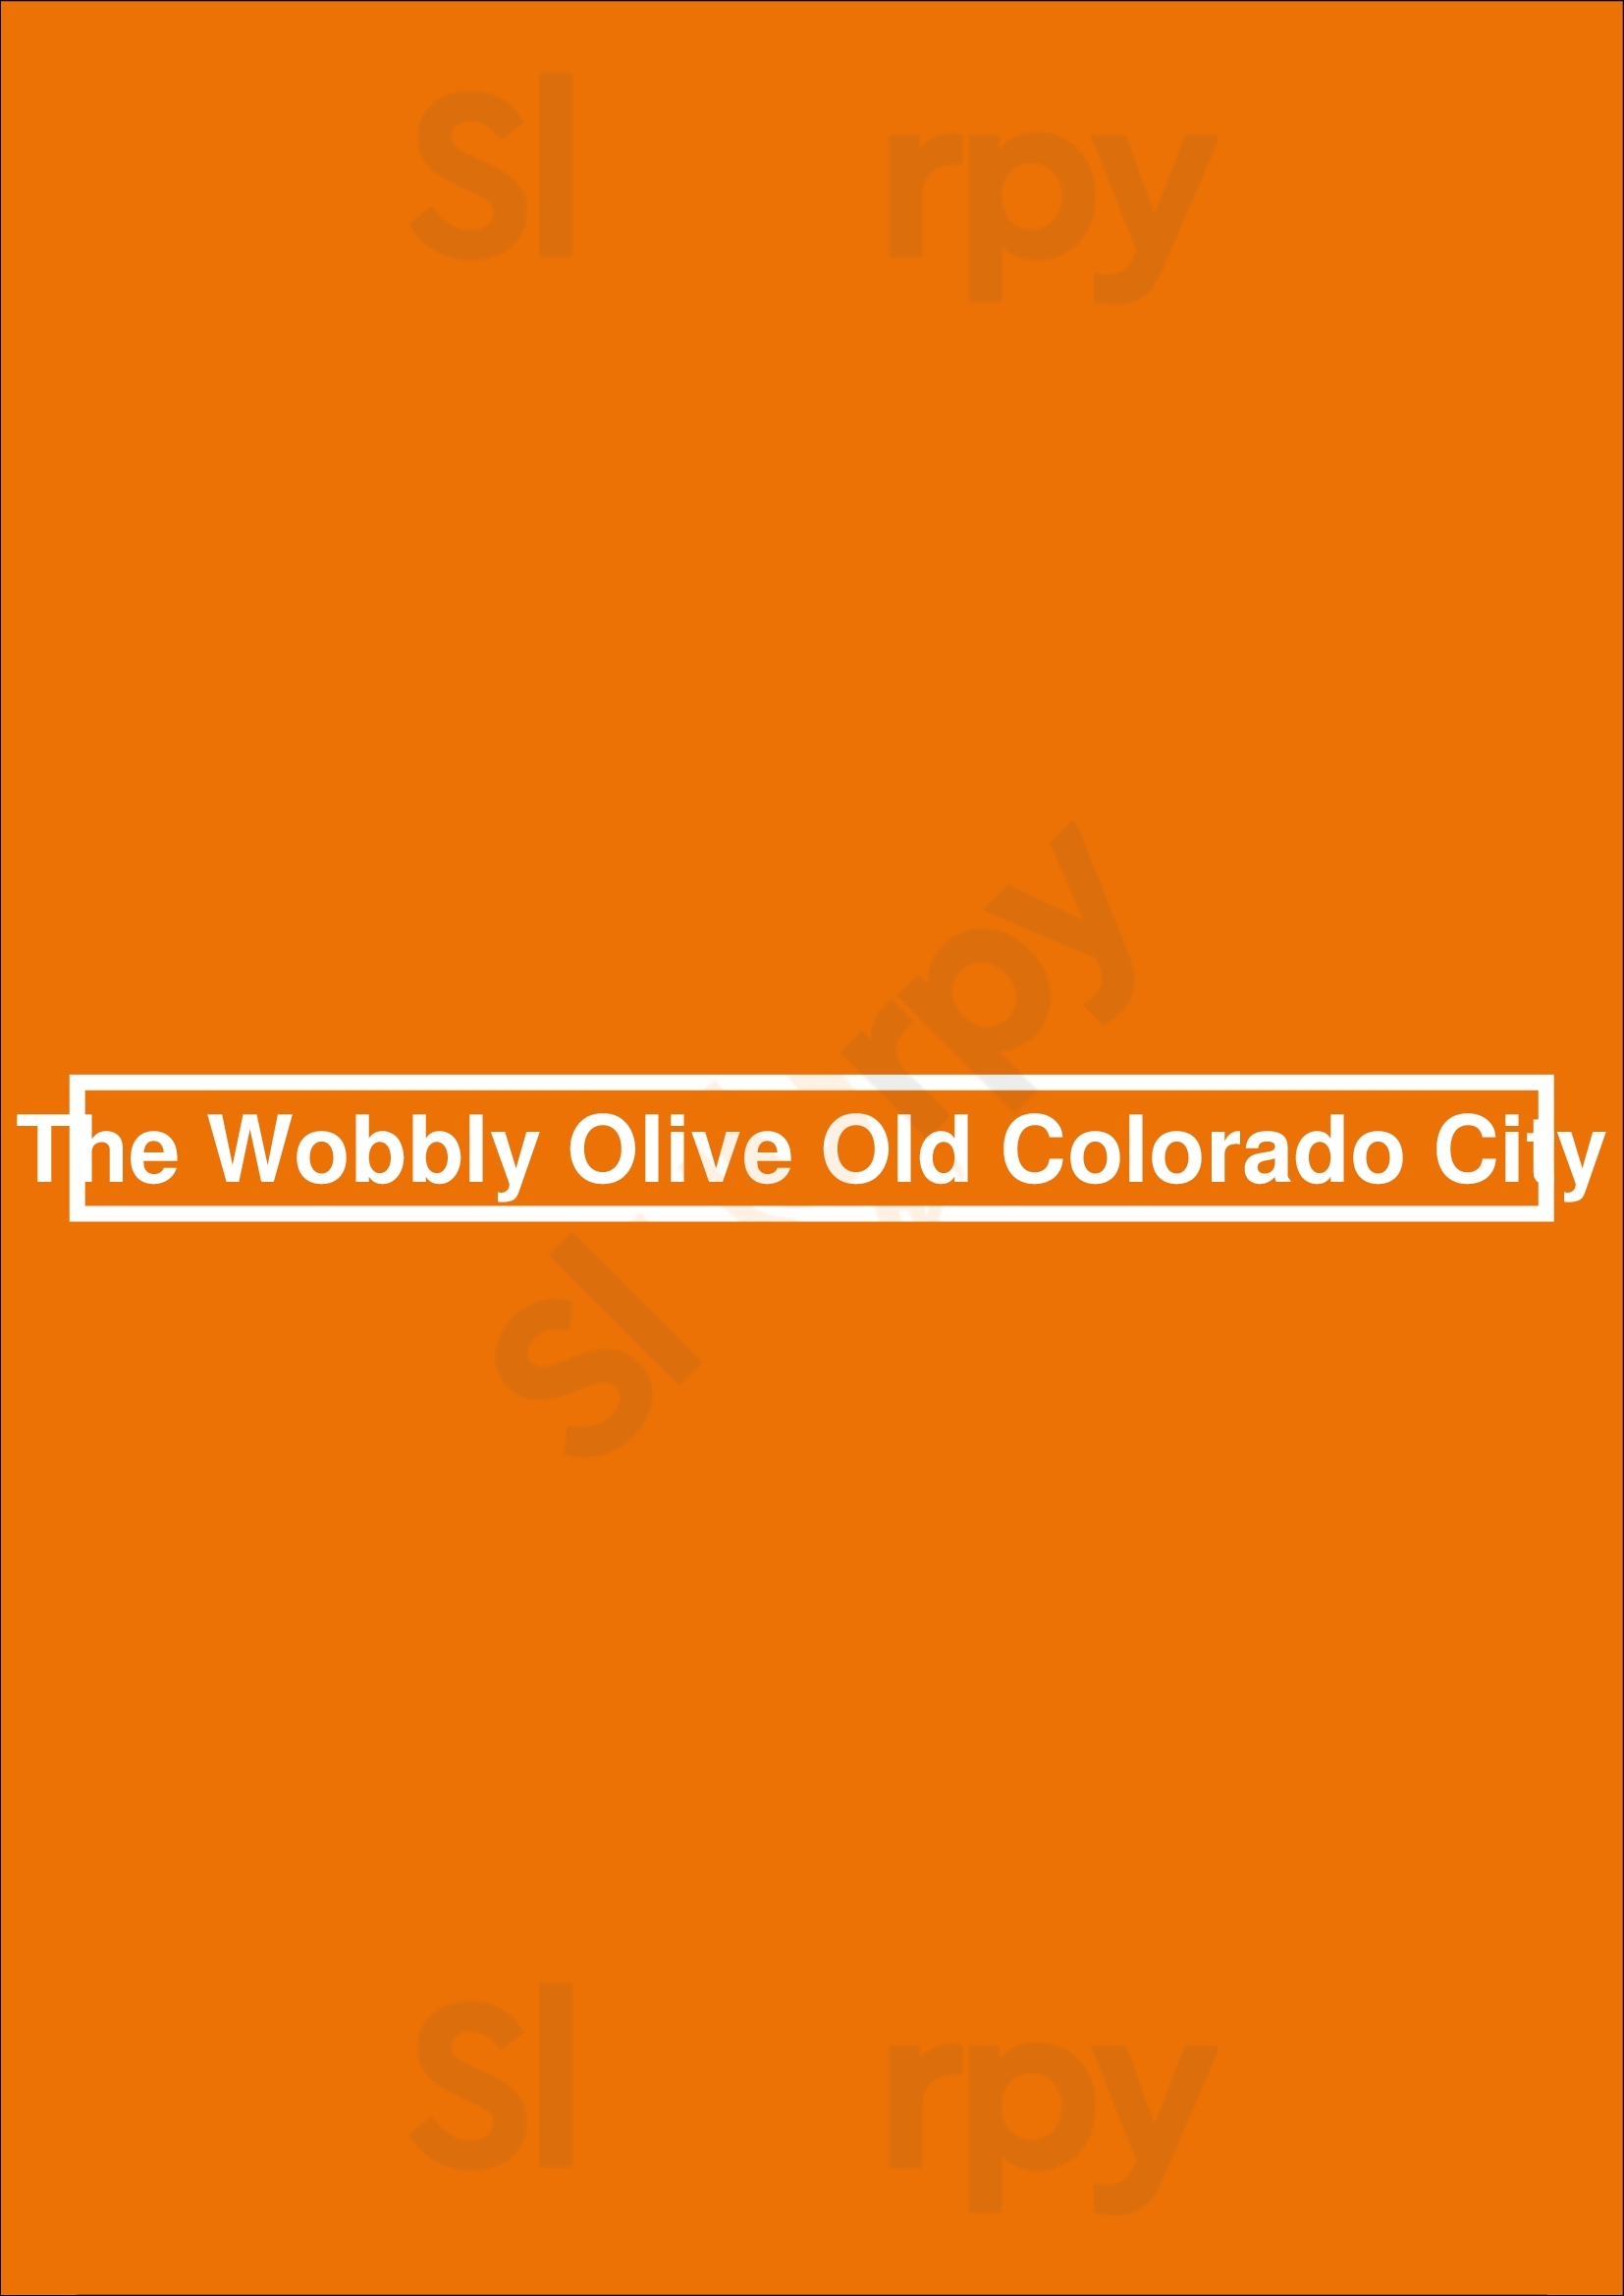 The Wobbly Olive Old Colorado City Colorado Springs Menu - 1